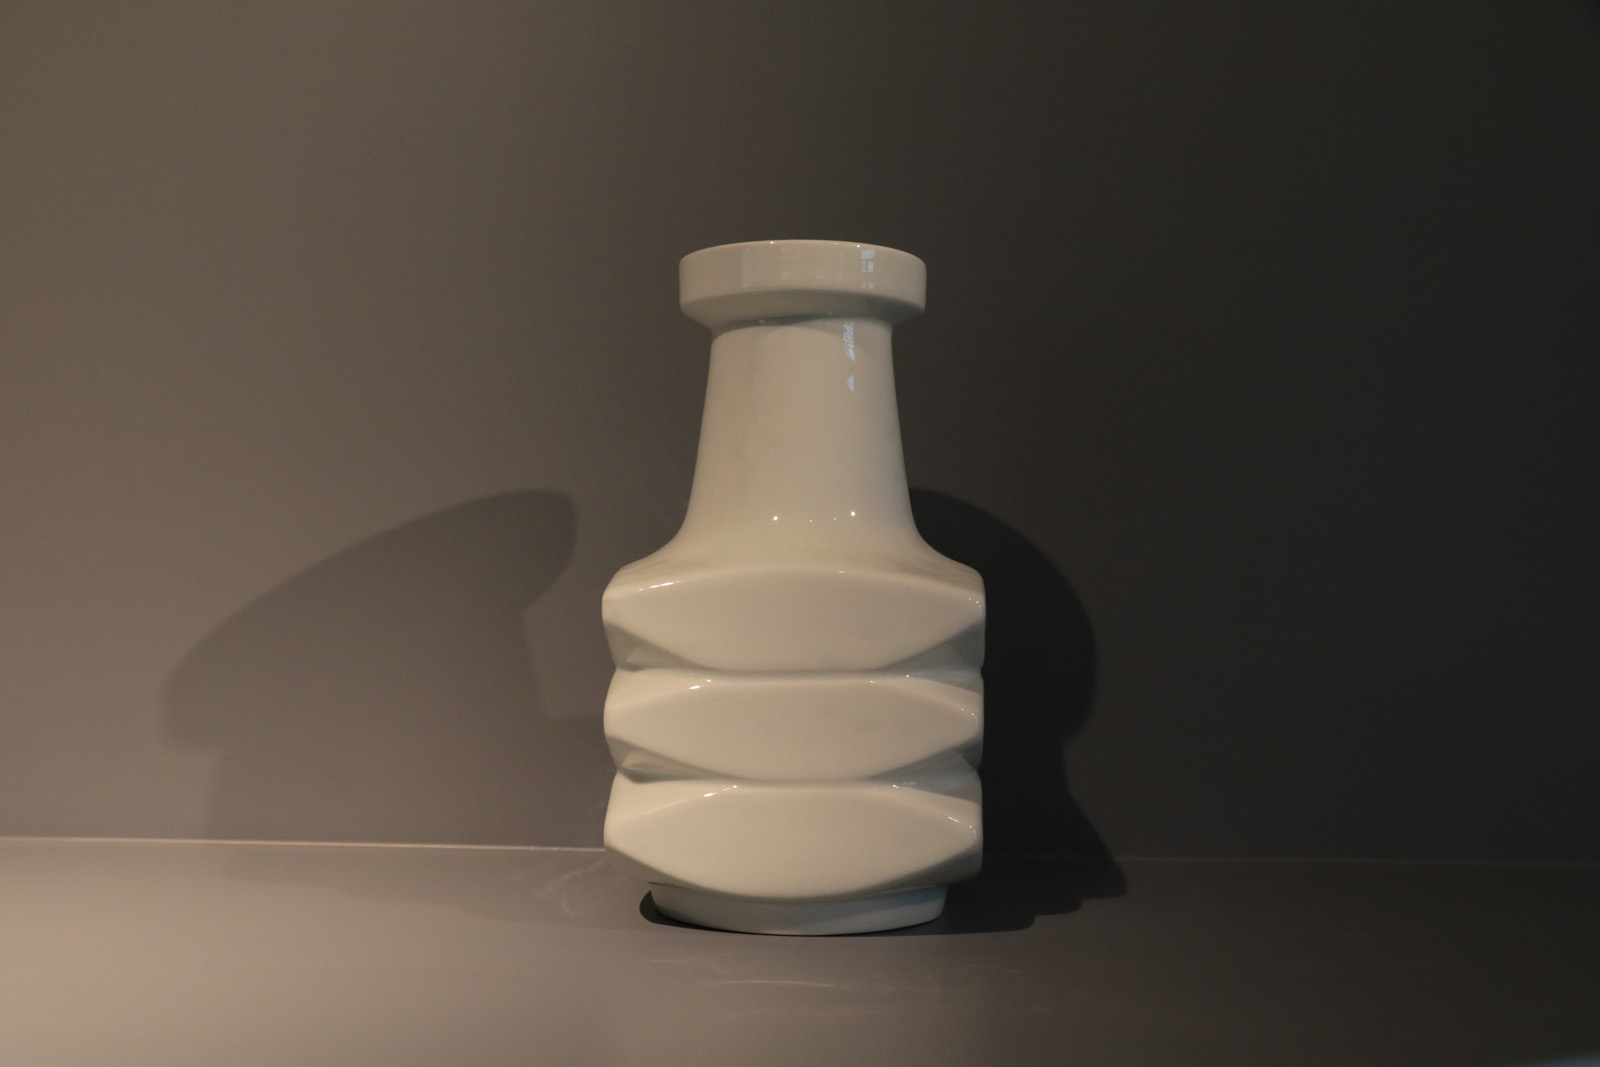 White vase